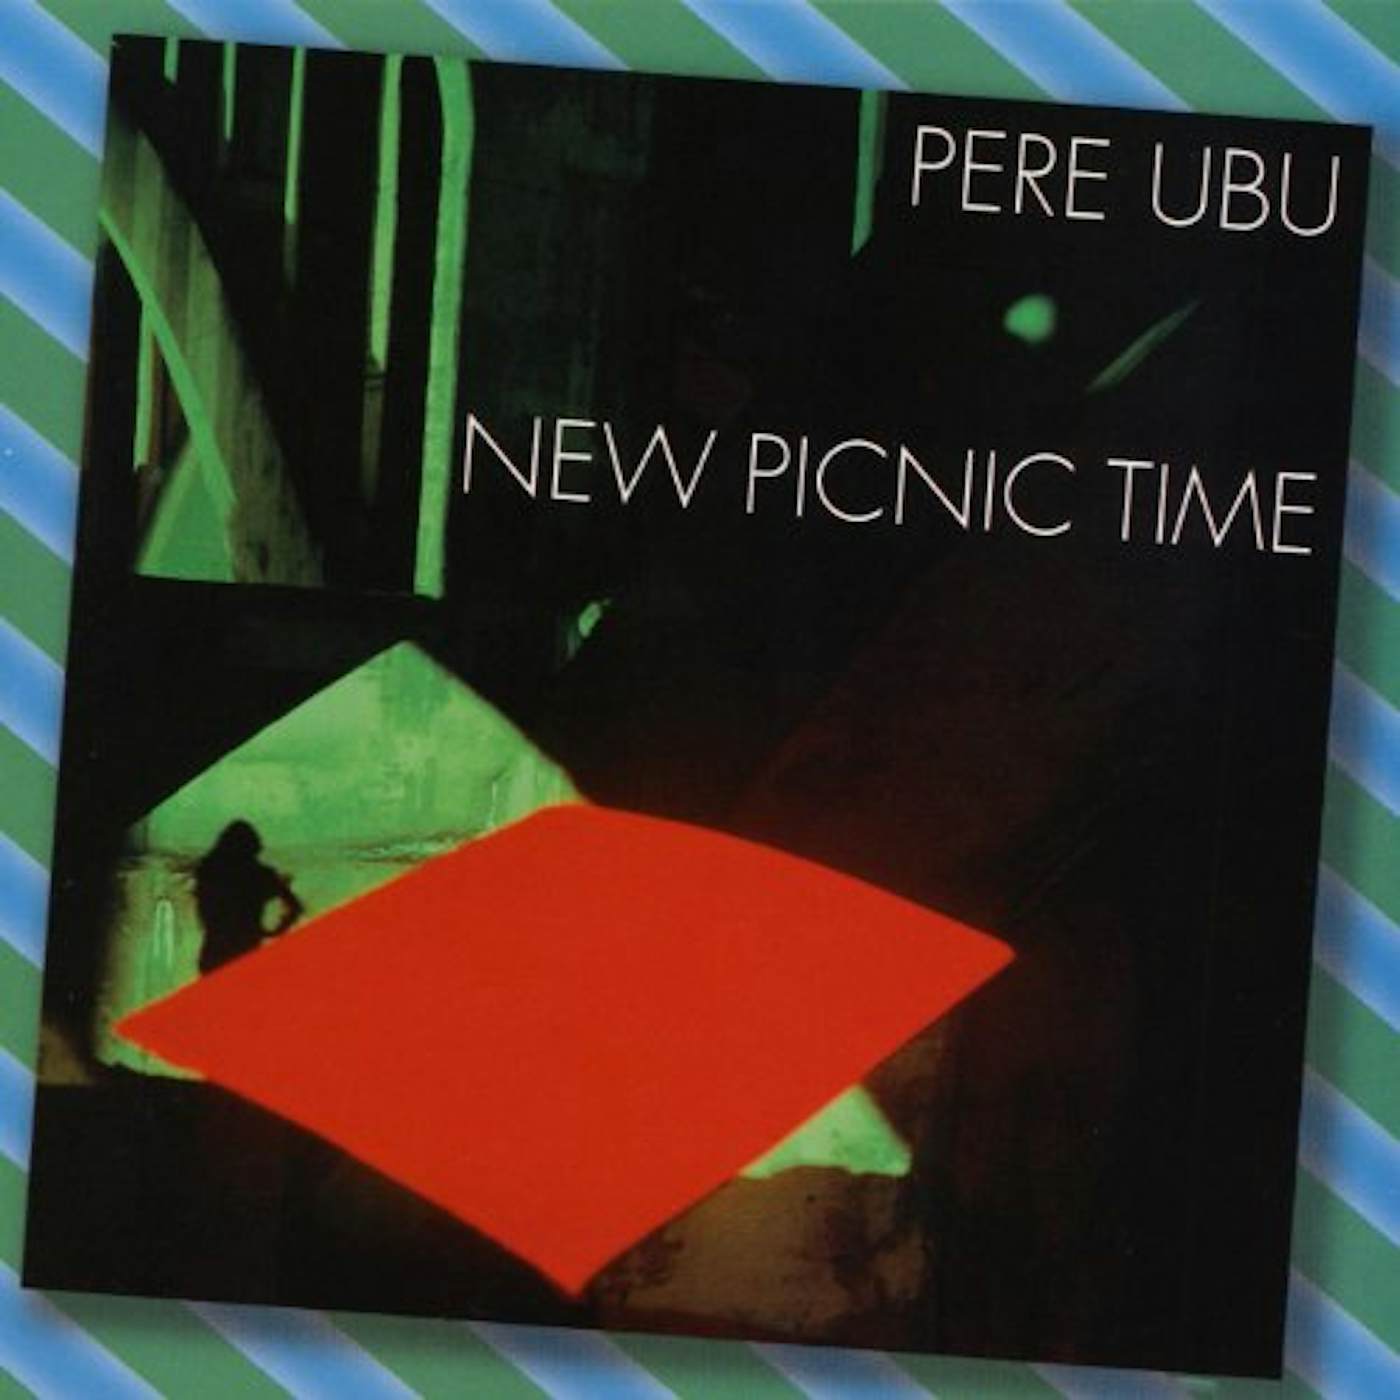 Pere Ubu New Picnic Time Vinyl Record